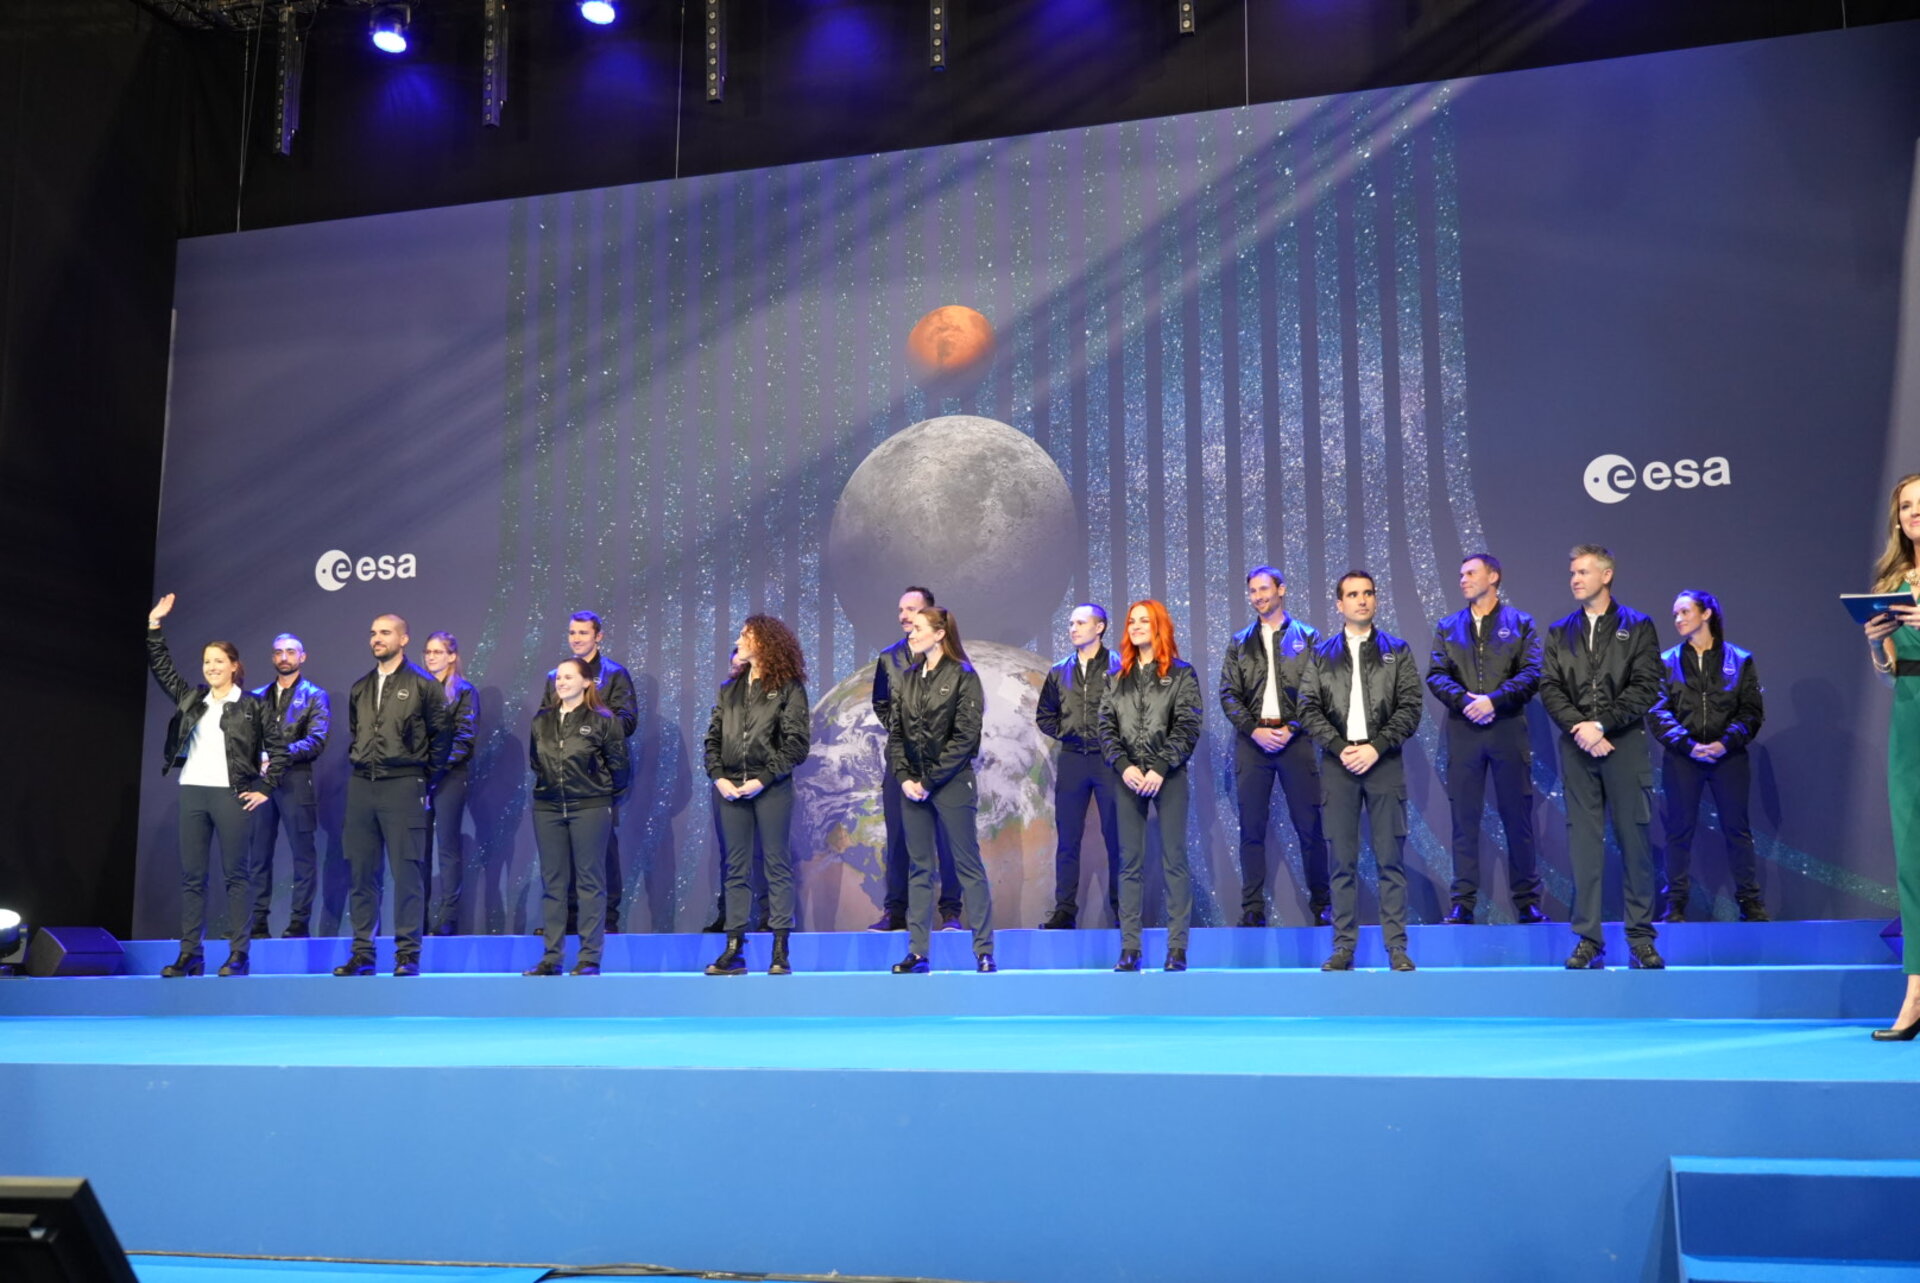 Πέντε νέοι αστροναύτες από τον Ευρωπαϊκό Οργανισμό Διαστήματος